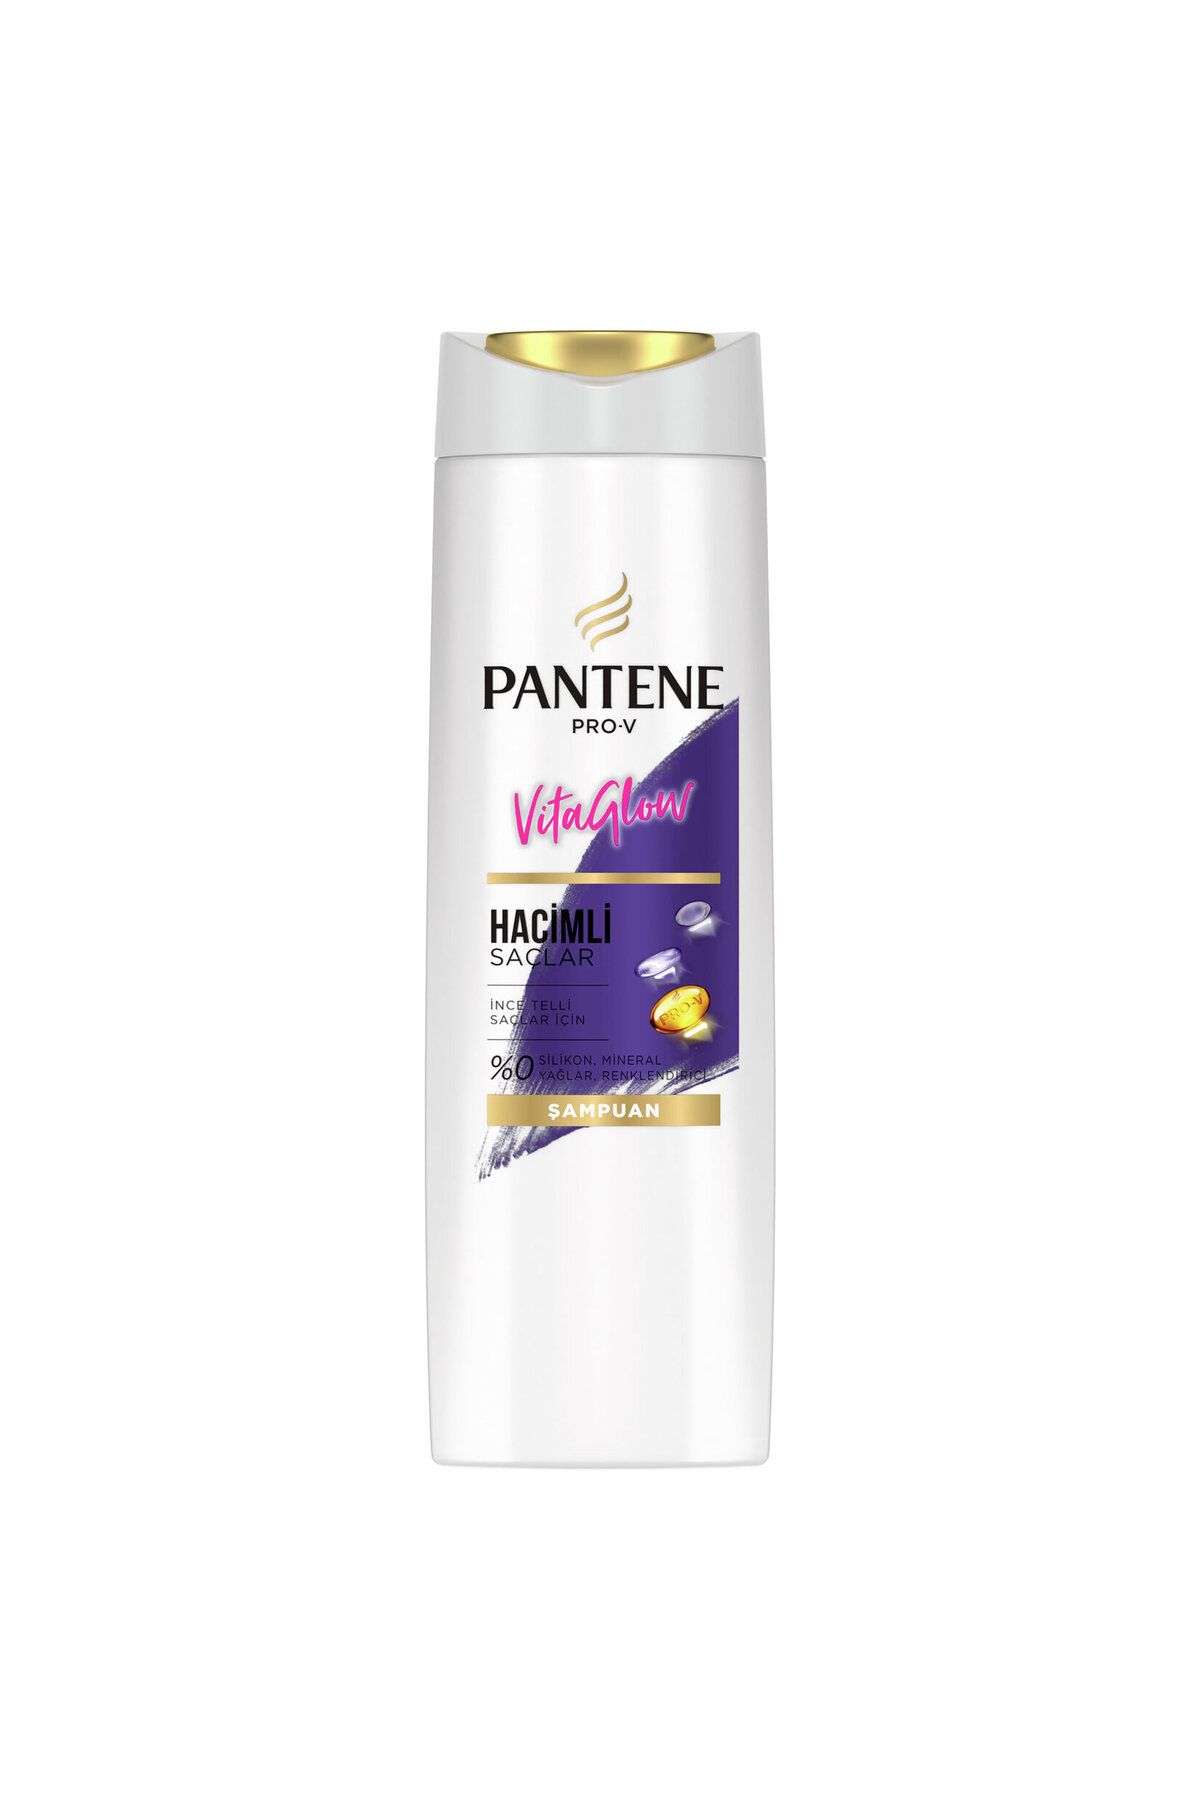 Pantene  vitaglow hacimli Saçlar Şampuan 300 ml